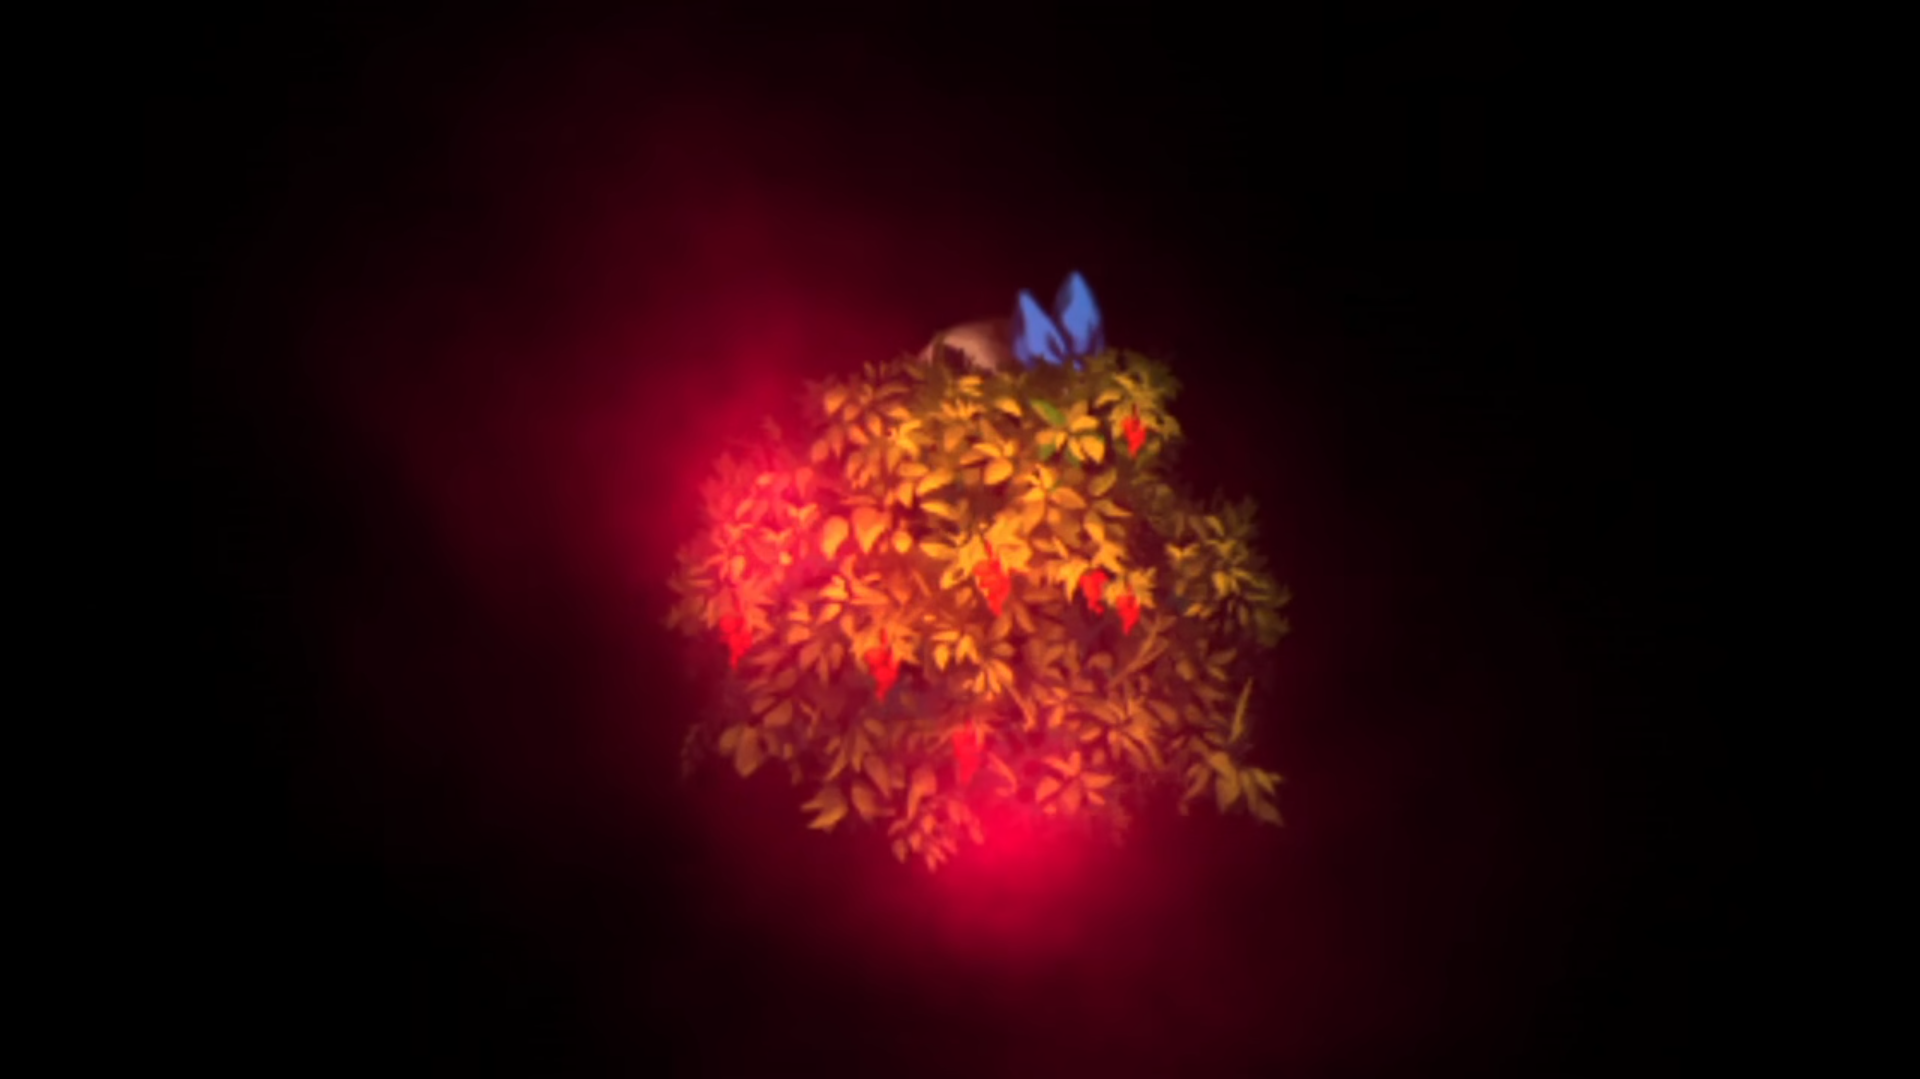 《深夜廻》遊戲截圖畫面，藍色蝴蝶結就是躲在草叢中的玩家的頭飾，紅色霧氣是鬼怪的大概方位